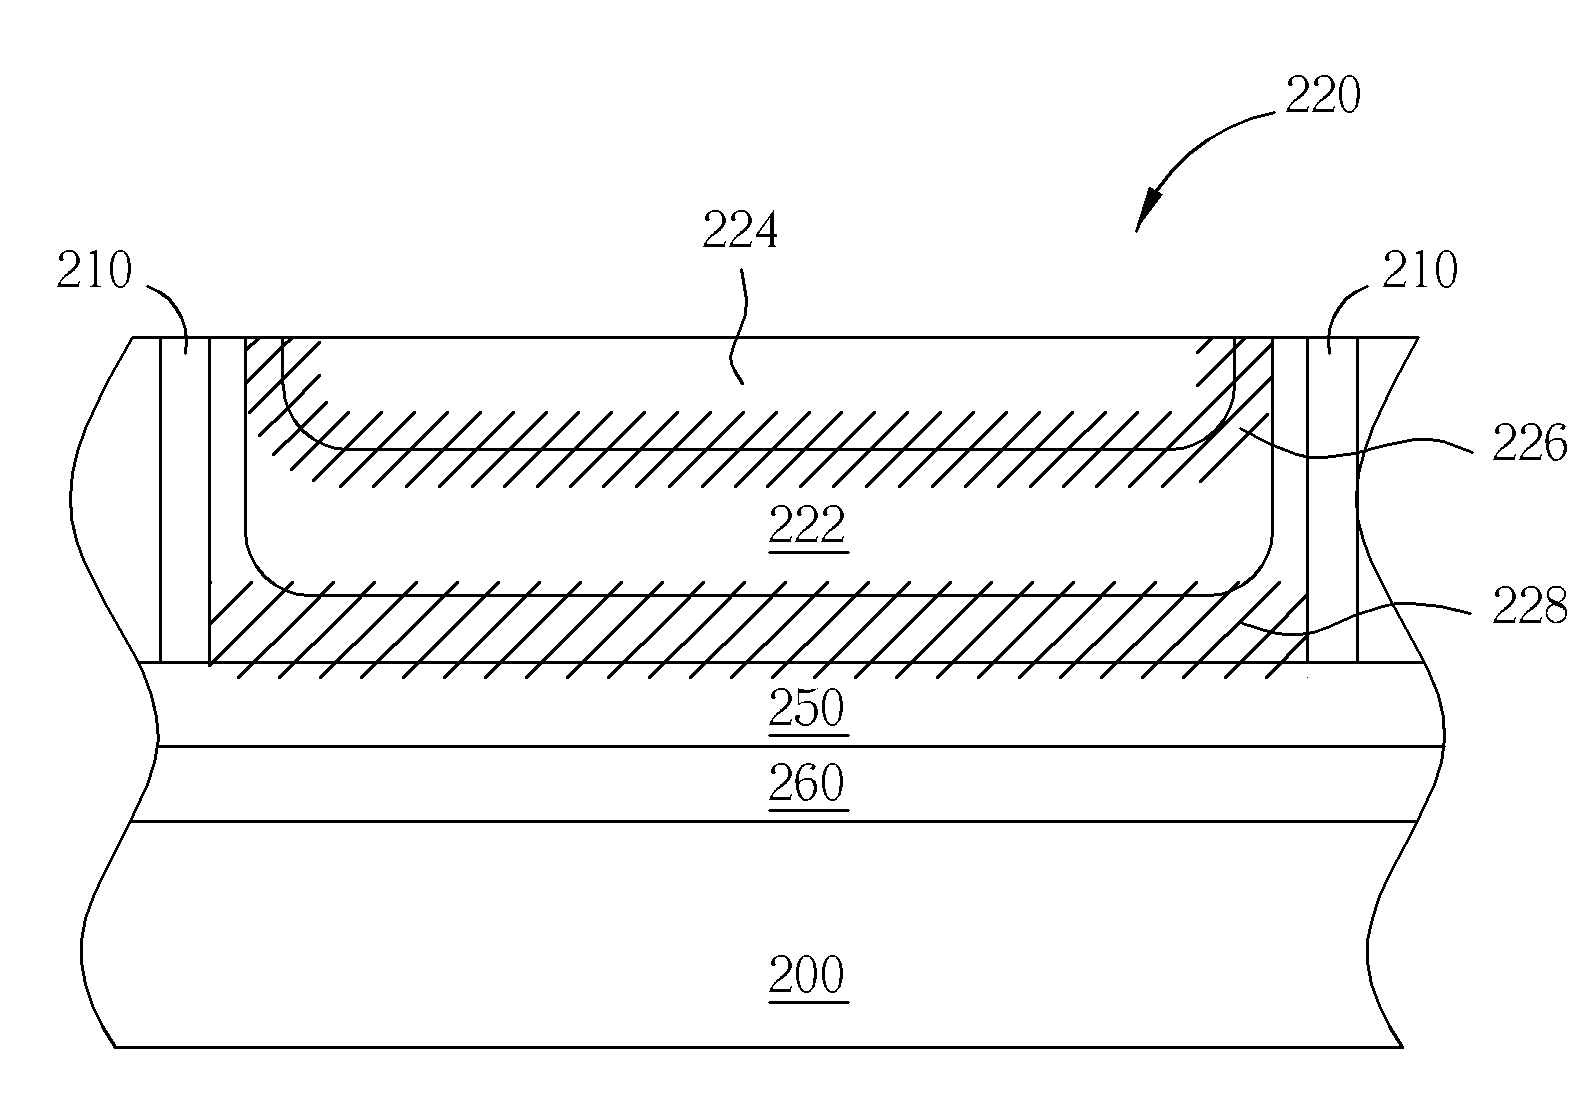 Photodiode of an image sensor and fabricating method thereof